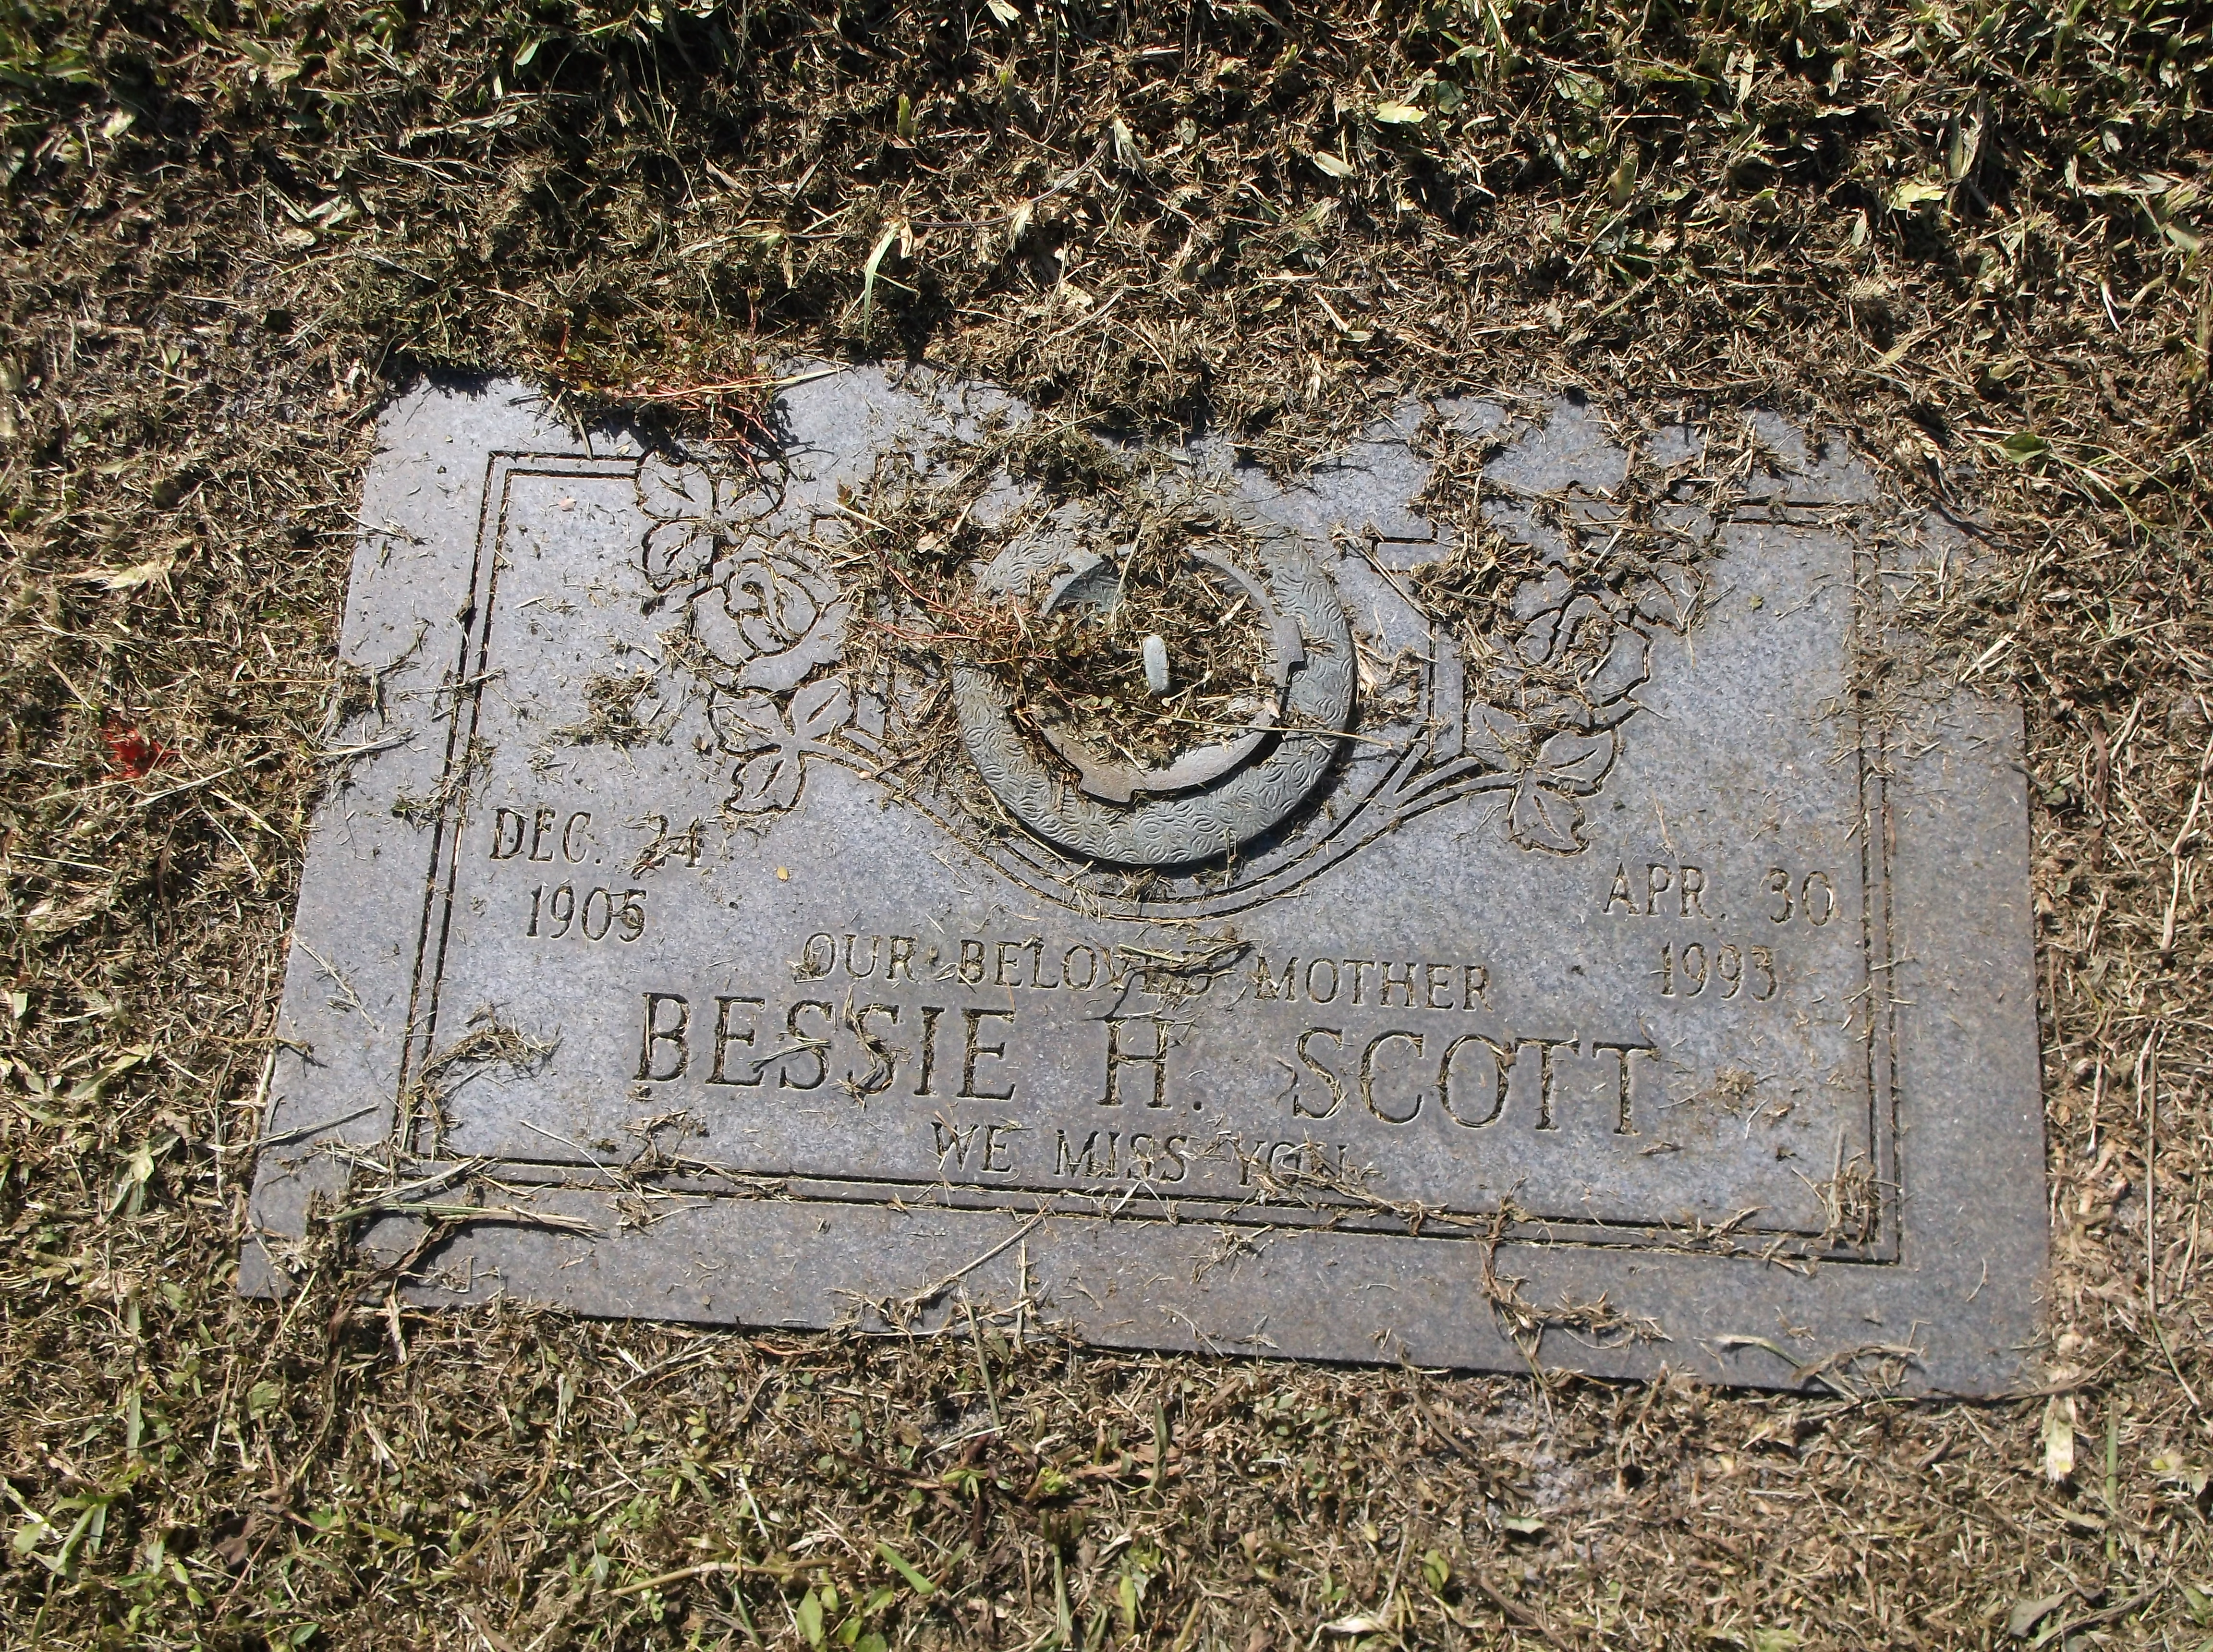 Bessie H Scott